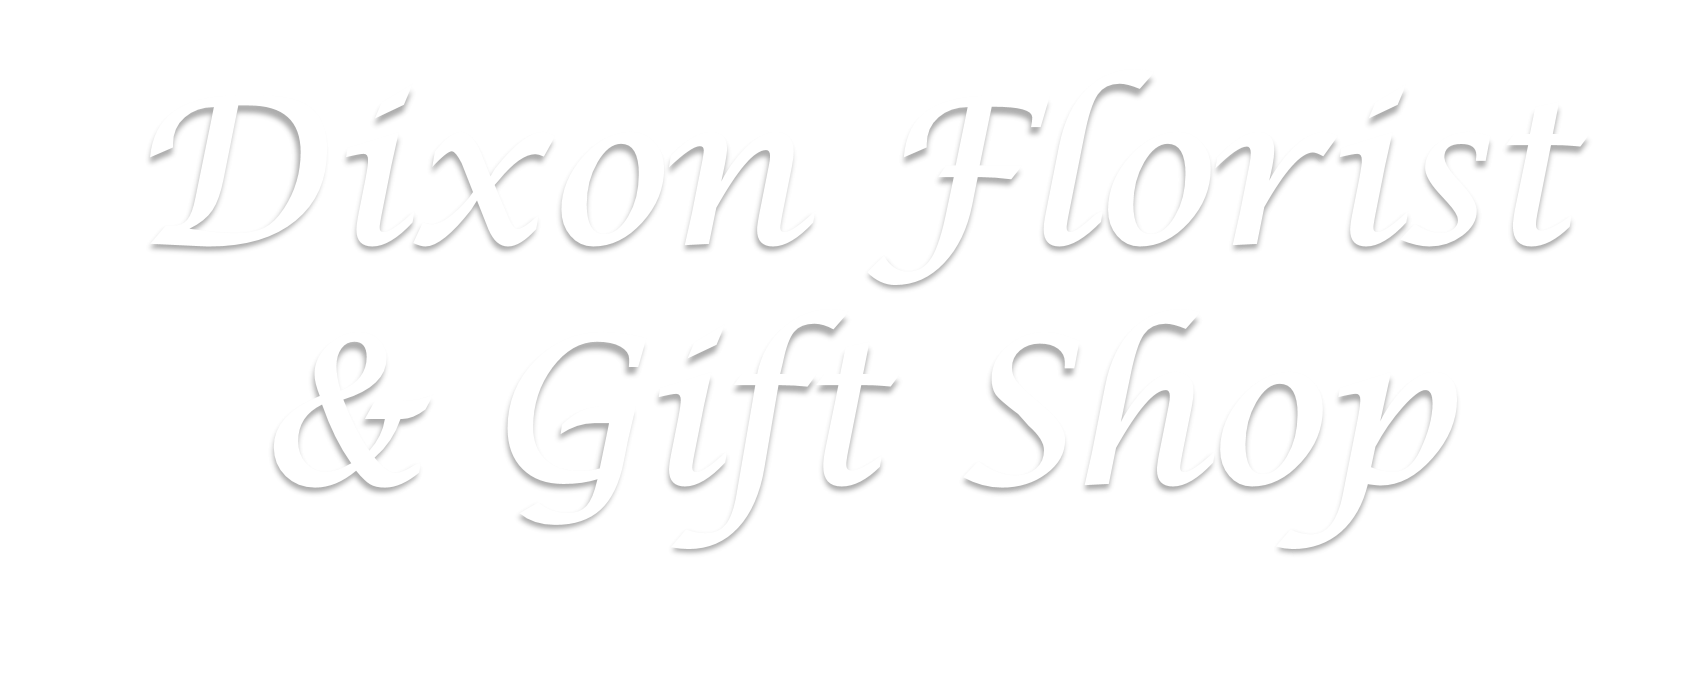 Dixon Florist & Gift Shop - Dixon, CA 95620 - (707)678-4432 | ShowMeLocal.com